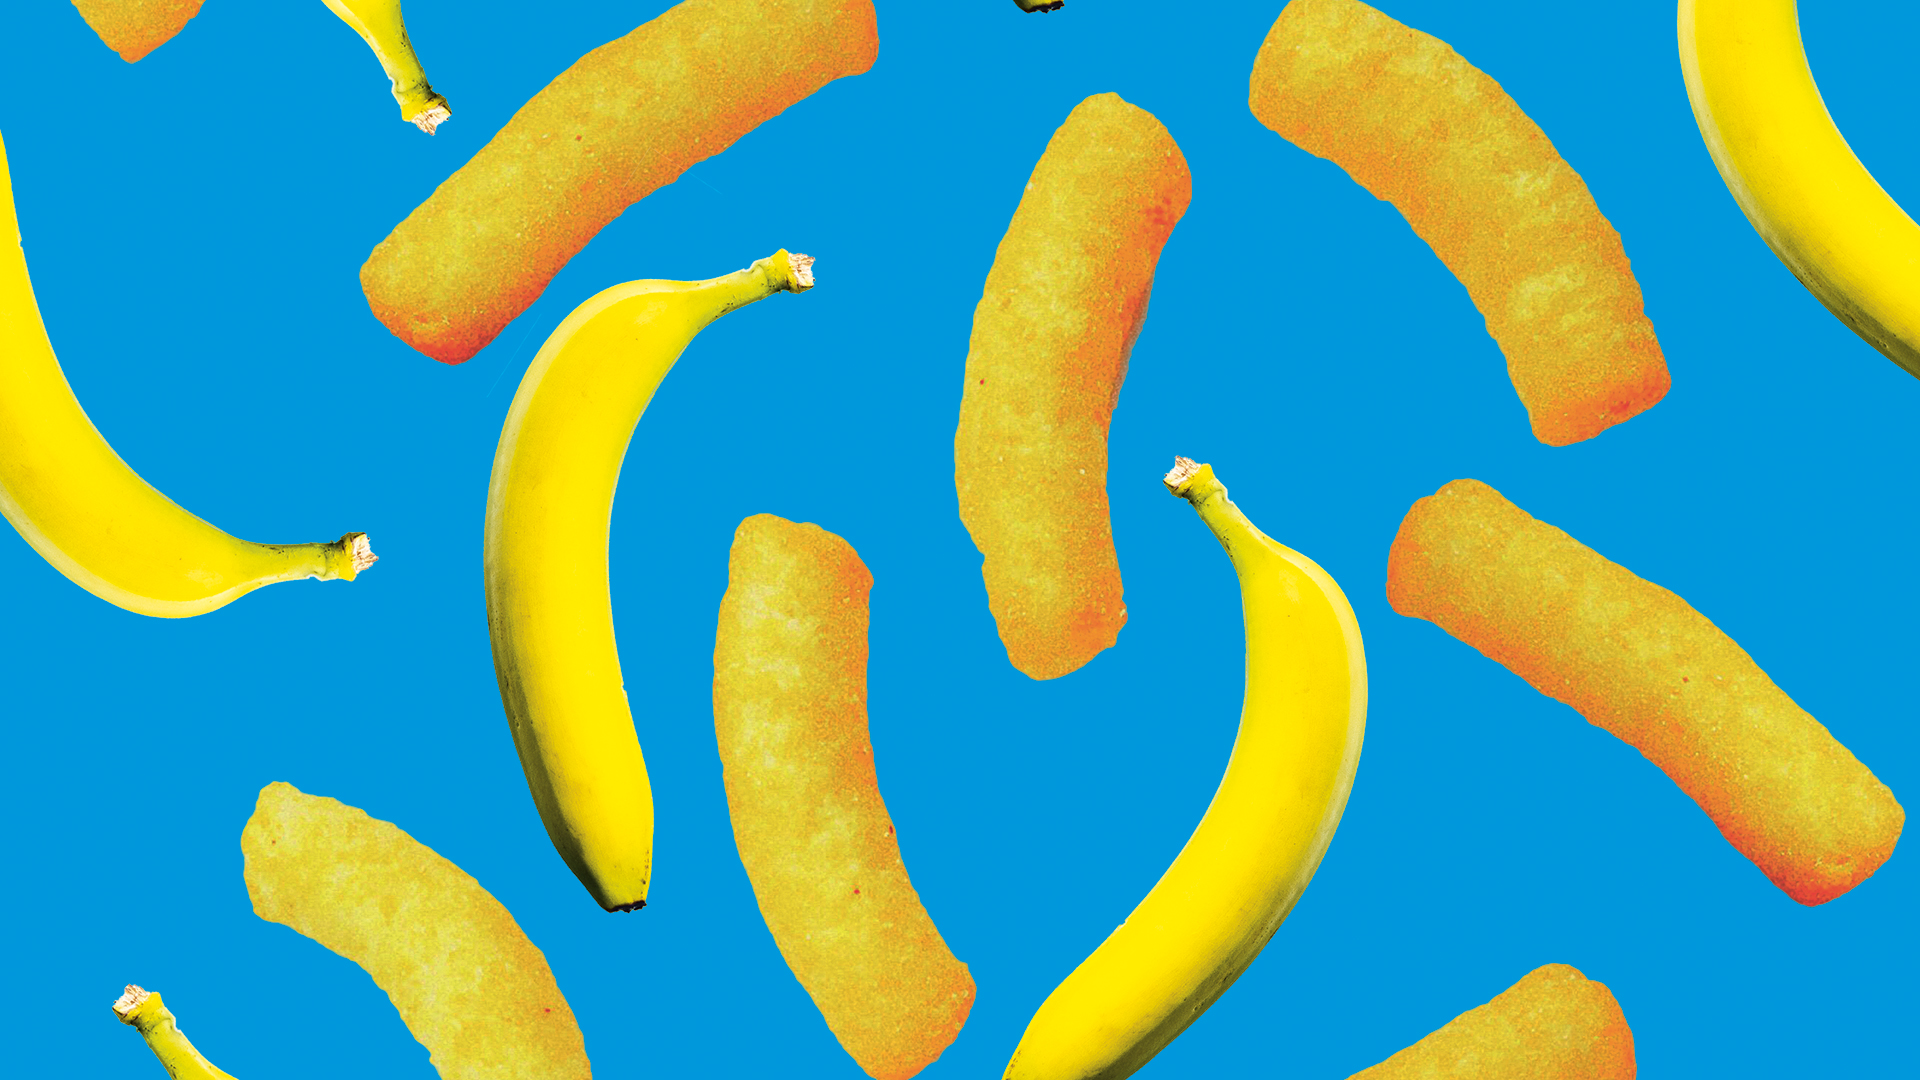 Bananas and Wotsits